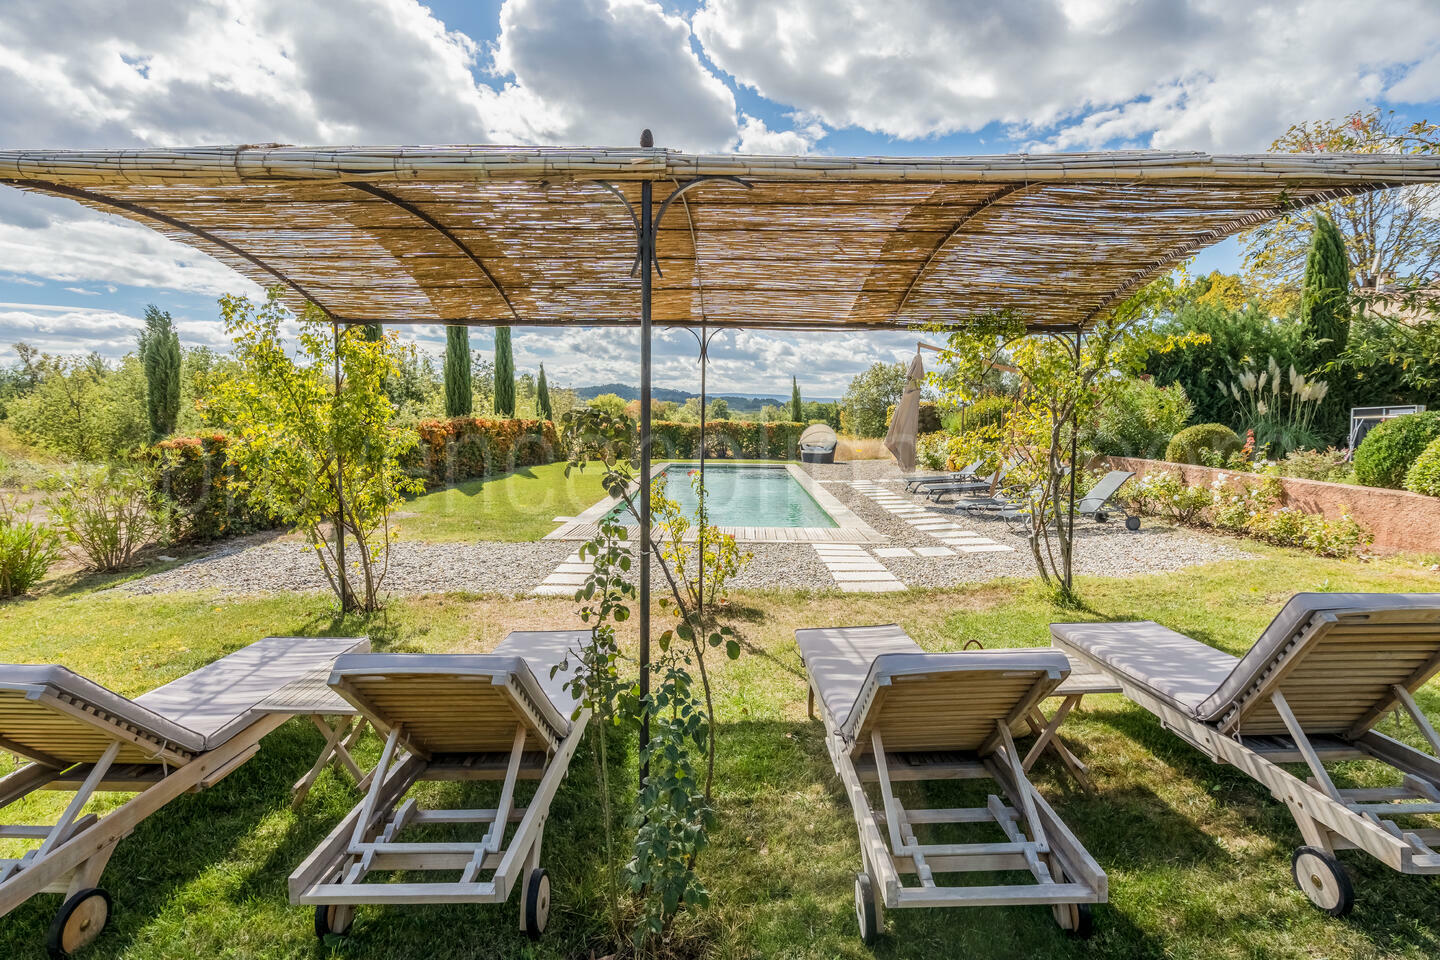 Location de vacances de charme avec piscine chauffée près de Roussillon 1 - Mas des Barbiers: Villa: Exterior